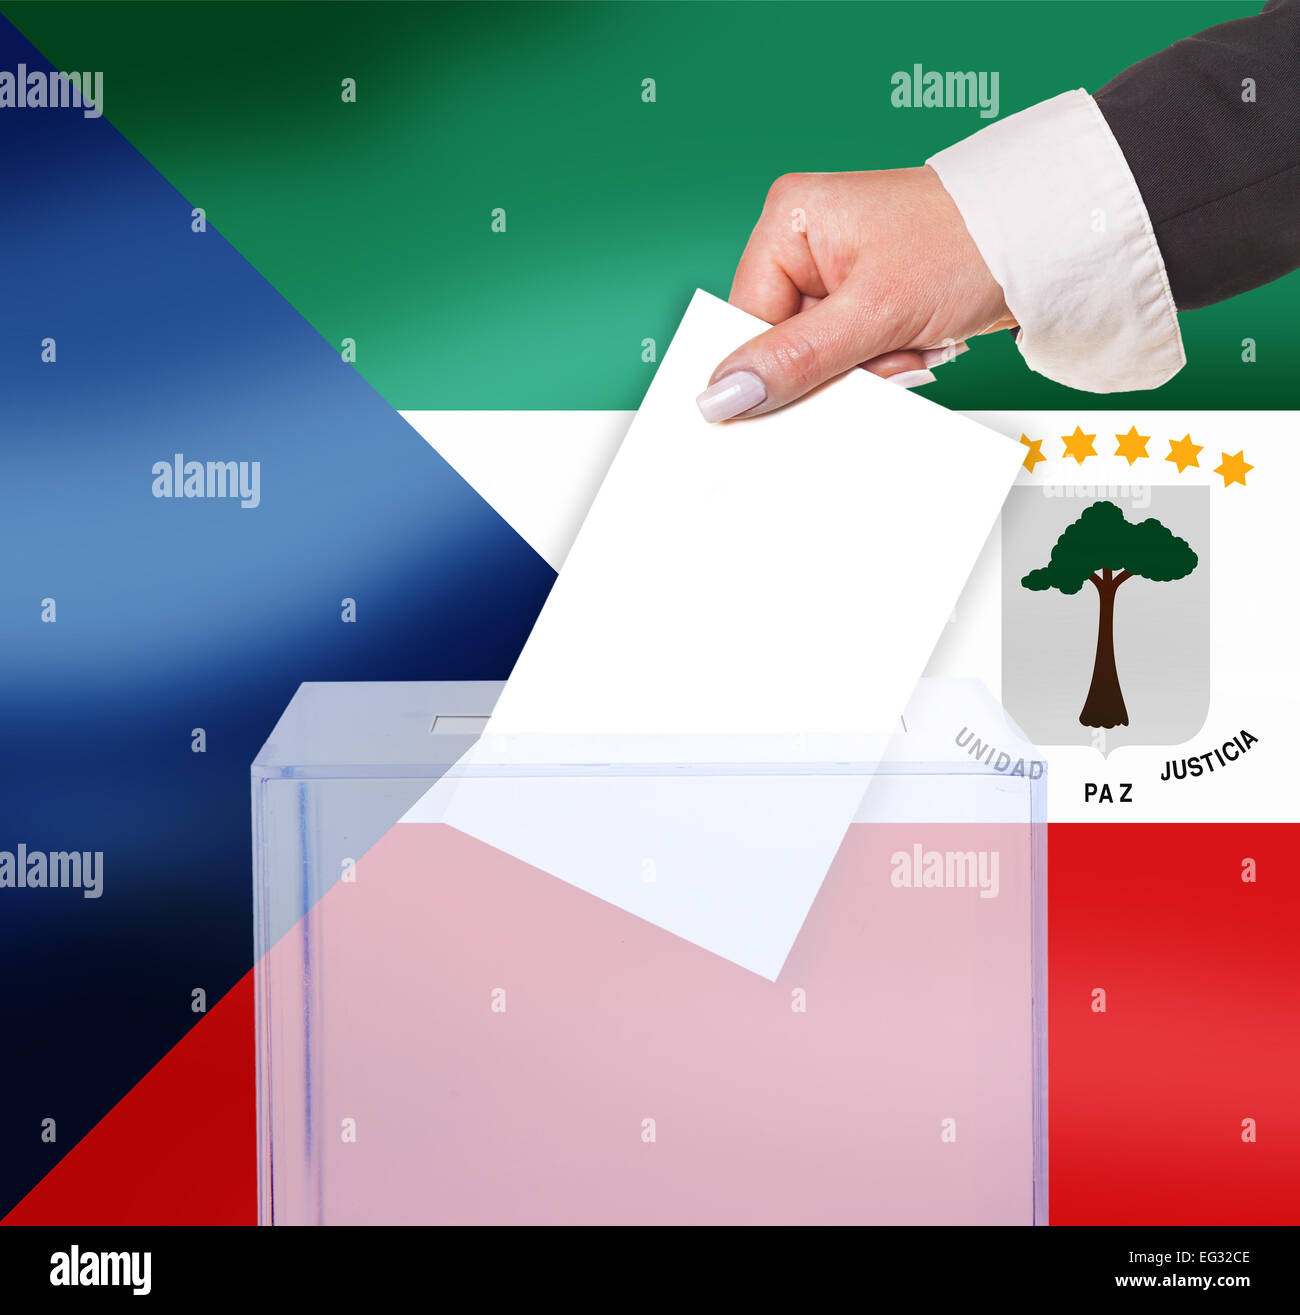 Vote au scrutin électoral, sous le drapeau de la Guinée équatoriale Banque D'Images